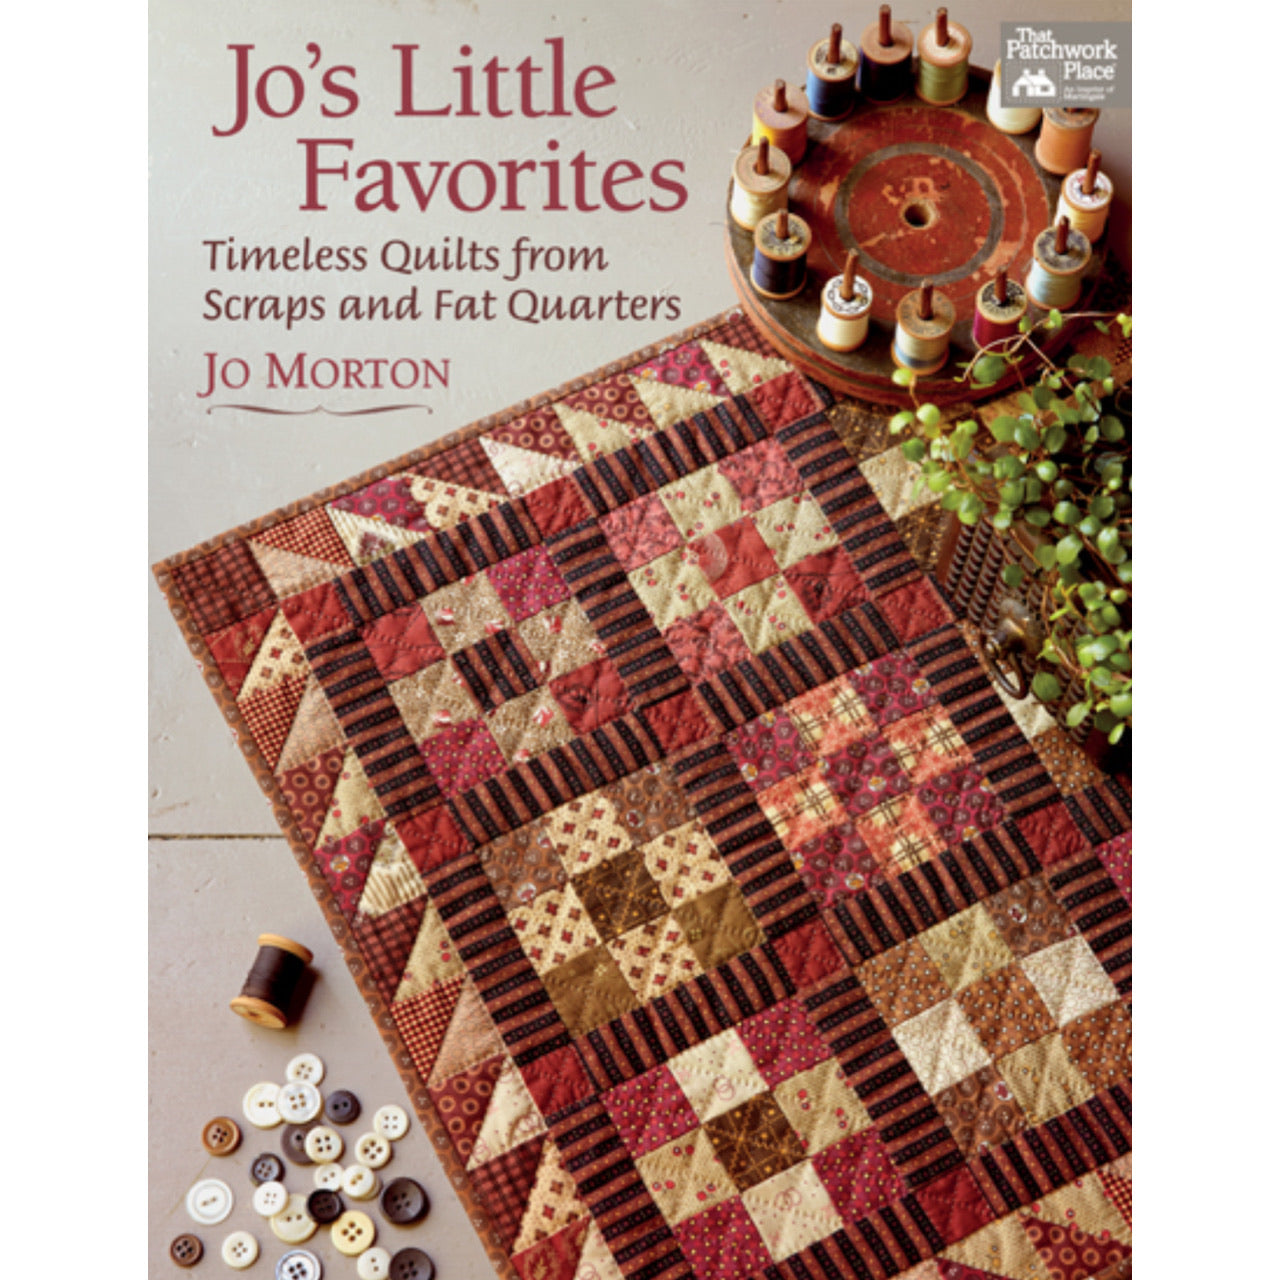 Jo's Little Favorites by Jo Morton